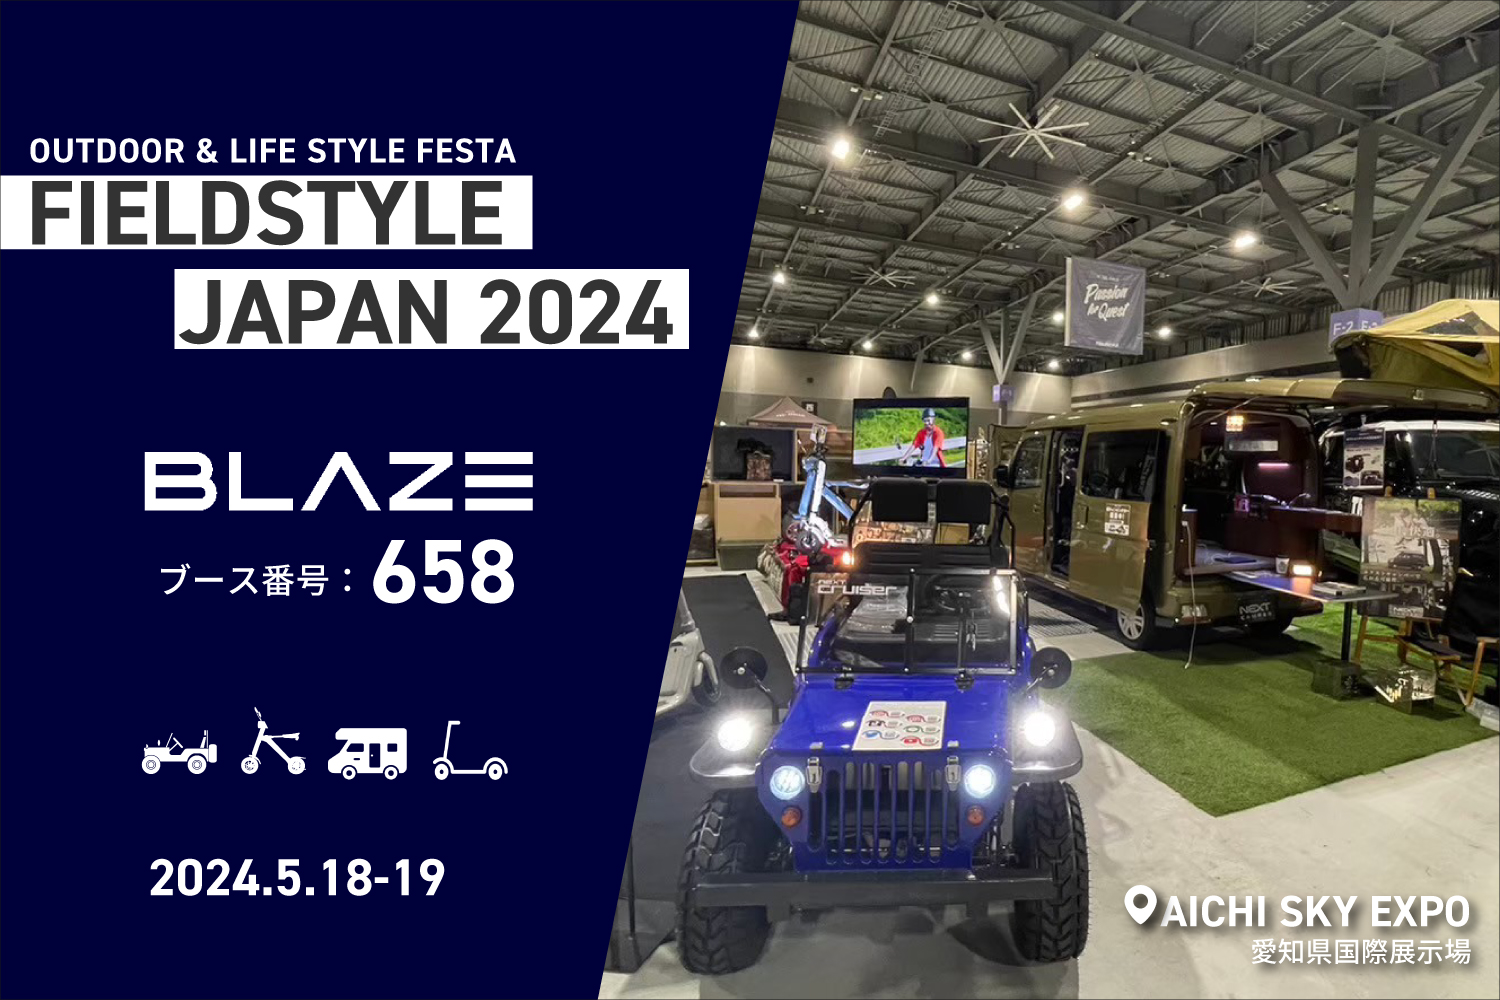 ブレイズが「FIELDSTYLE JAPAN 2024」に出展します！